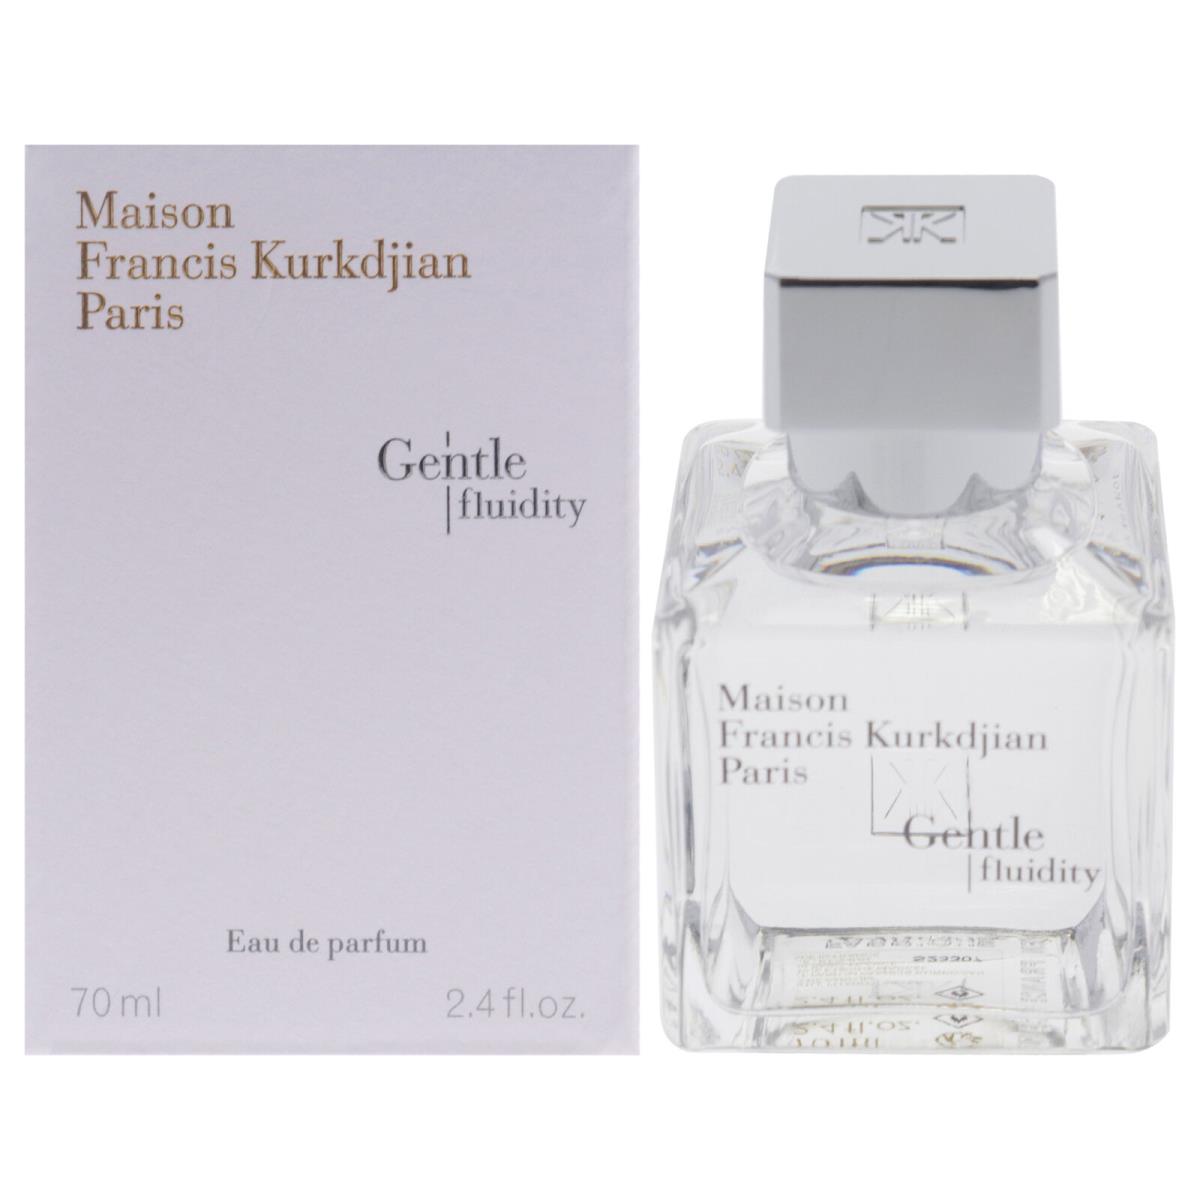 Gentle Fluidity - Silver Edition by Maison Francis Kurkdjian - 2.4 oz Edp Spray